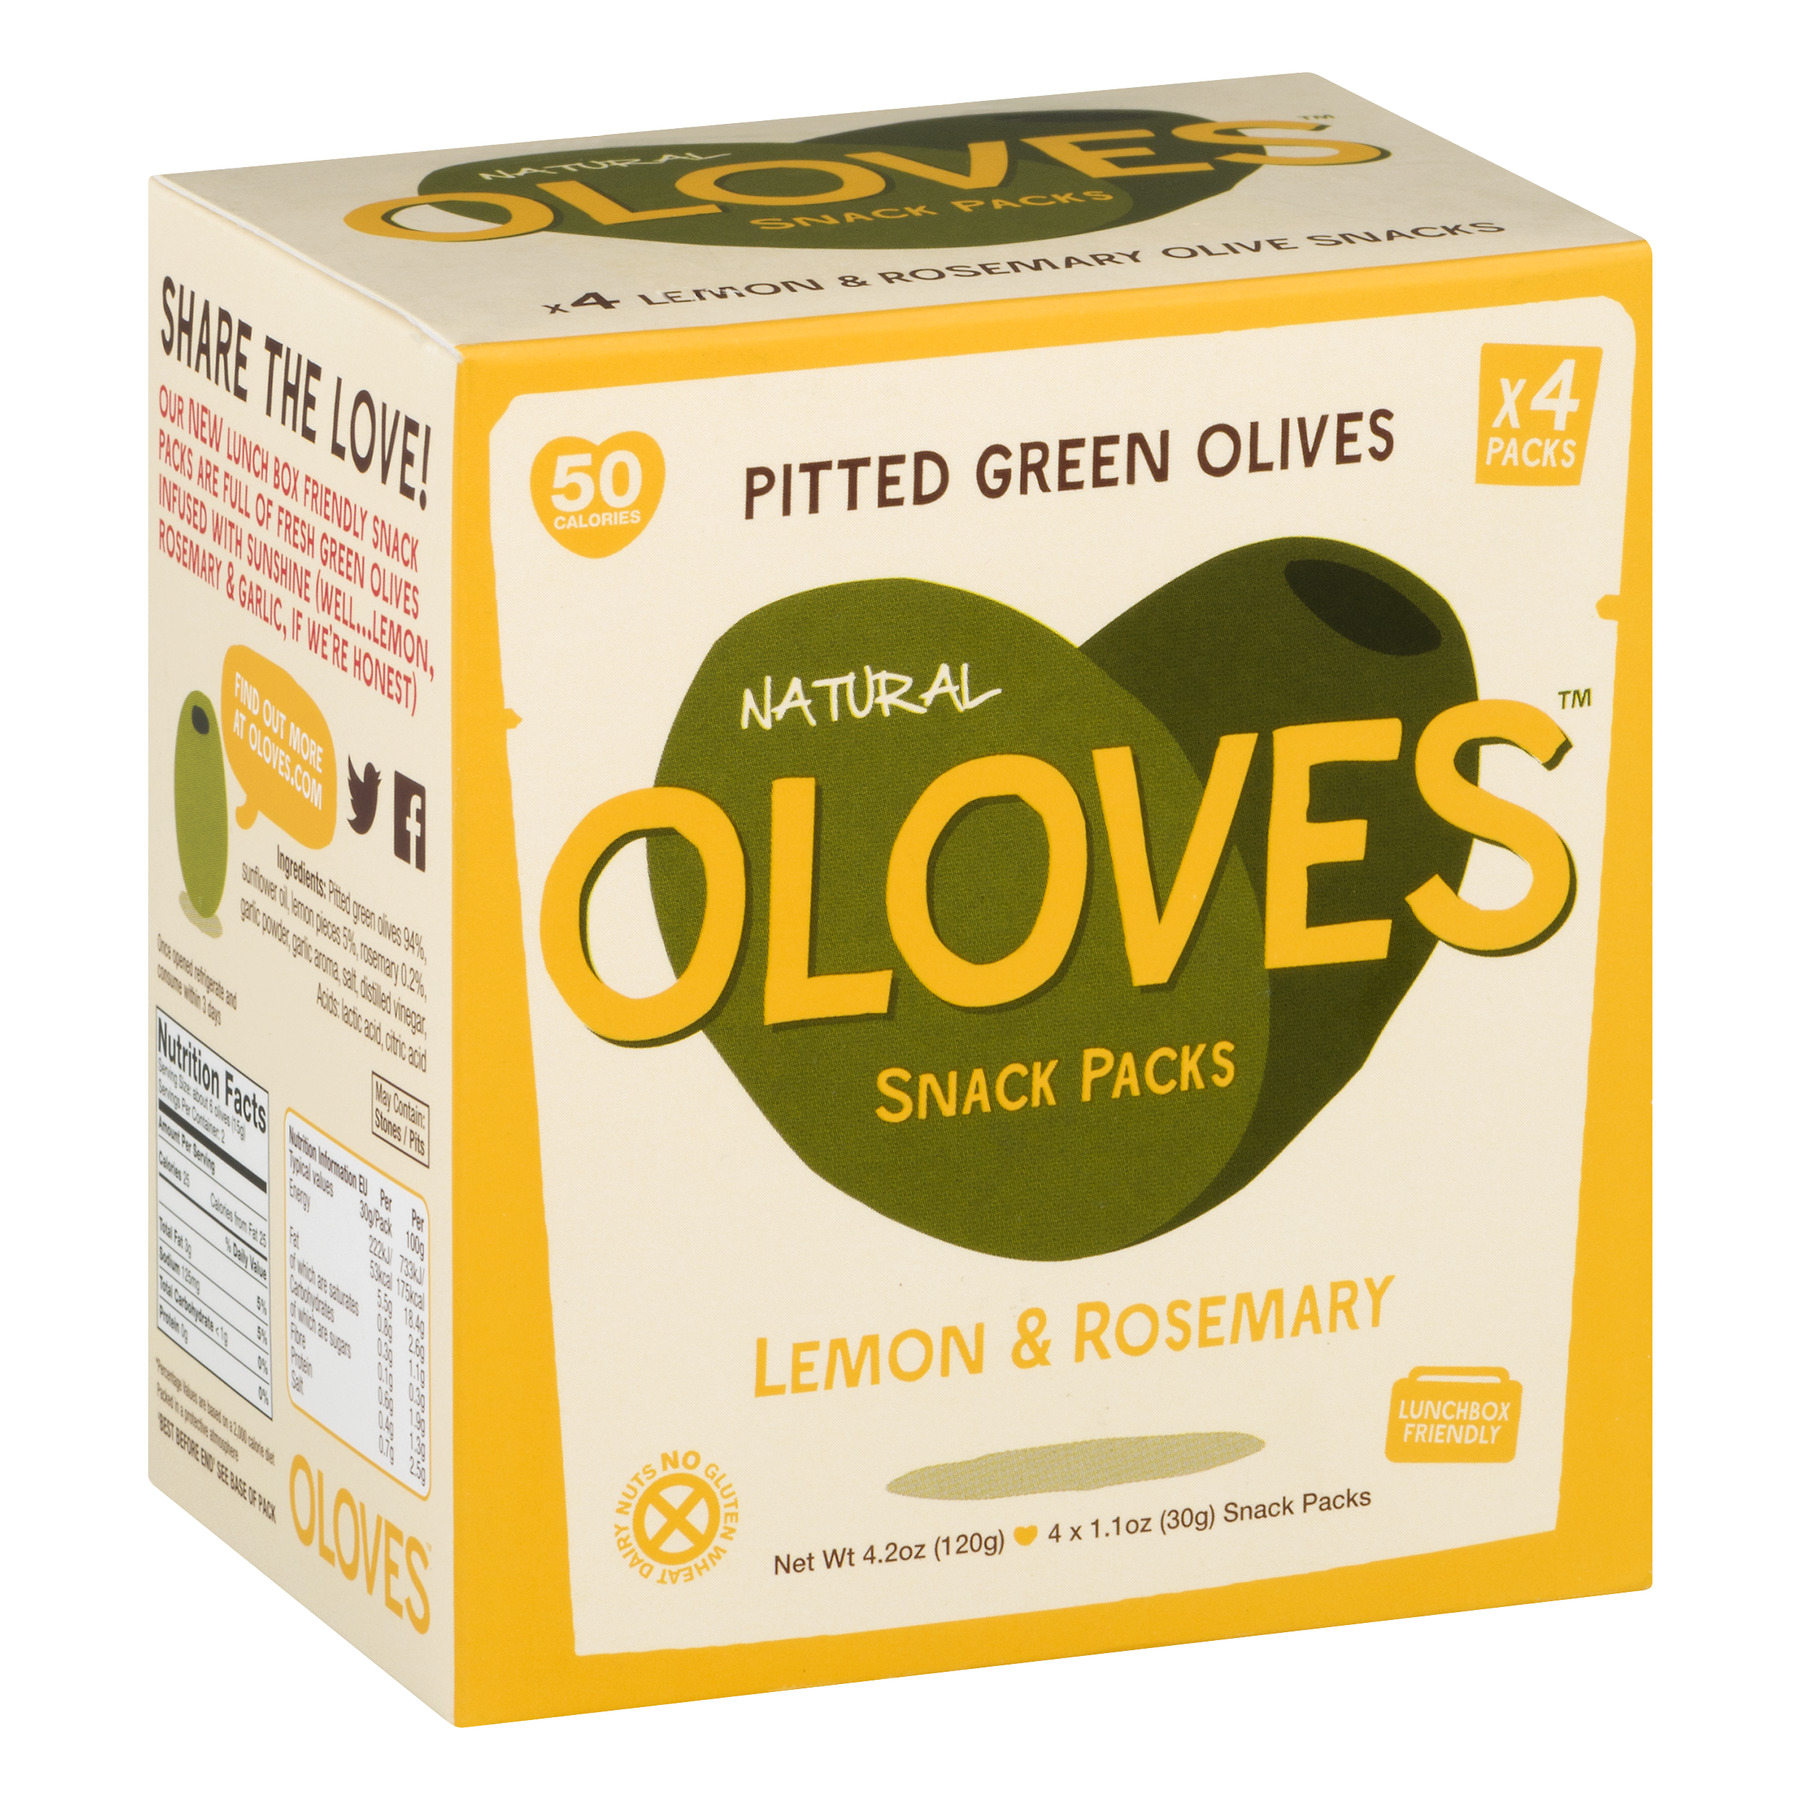 Oloves Pitted Green Olives Snack Packs Lemon & Rosemary - 4 CT1.1 OZ - image 2 of 6